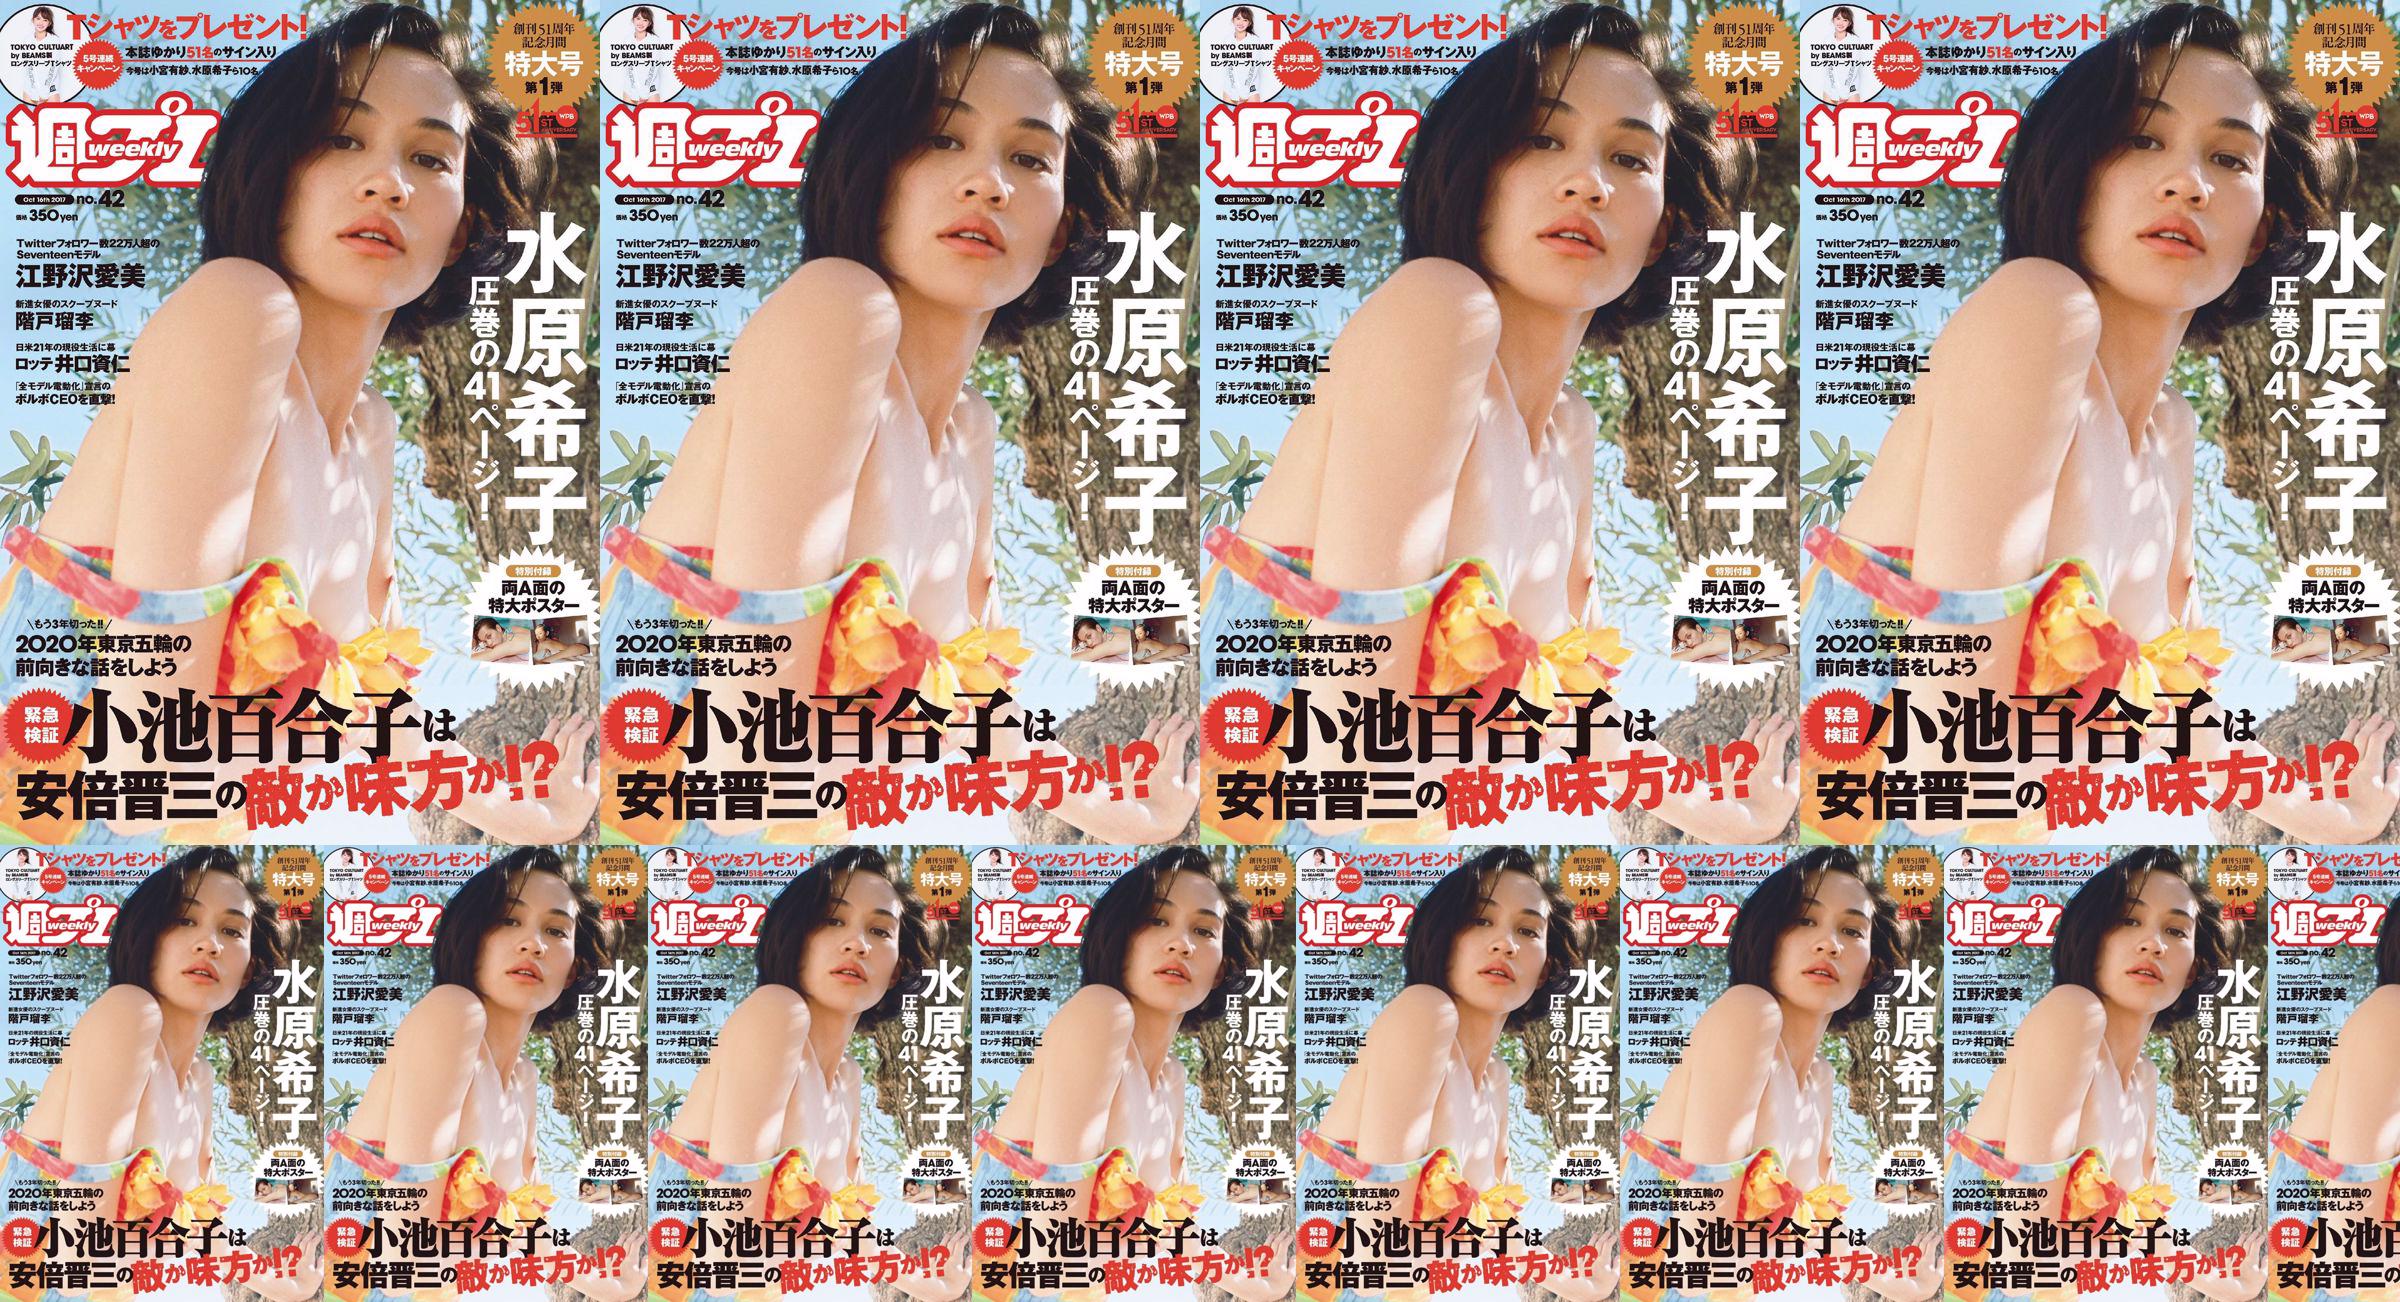 Kiko Mizuhara Manami Enosawa Serina Fukui Miu Nakamura Ruri Shinato [Playboy semanal] 2017 No.42 Photo Magazine No.23a380 Página 6